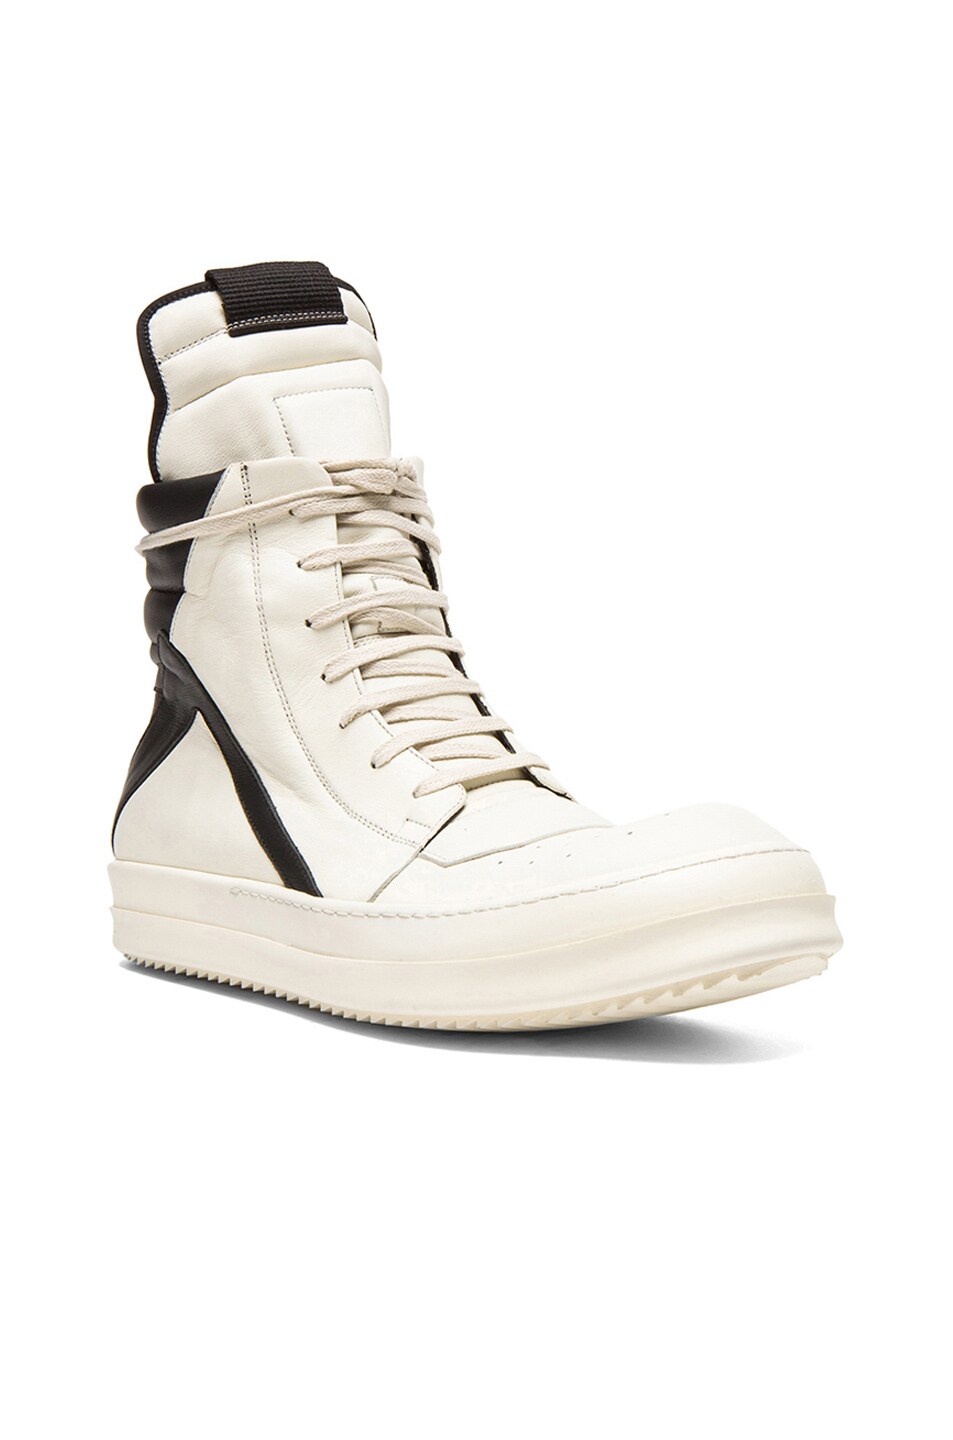 Image 1 of Rick Owens Geobasket Leather Sneakers in Milk & Black